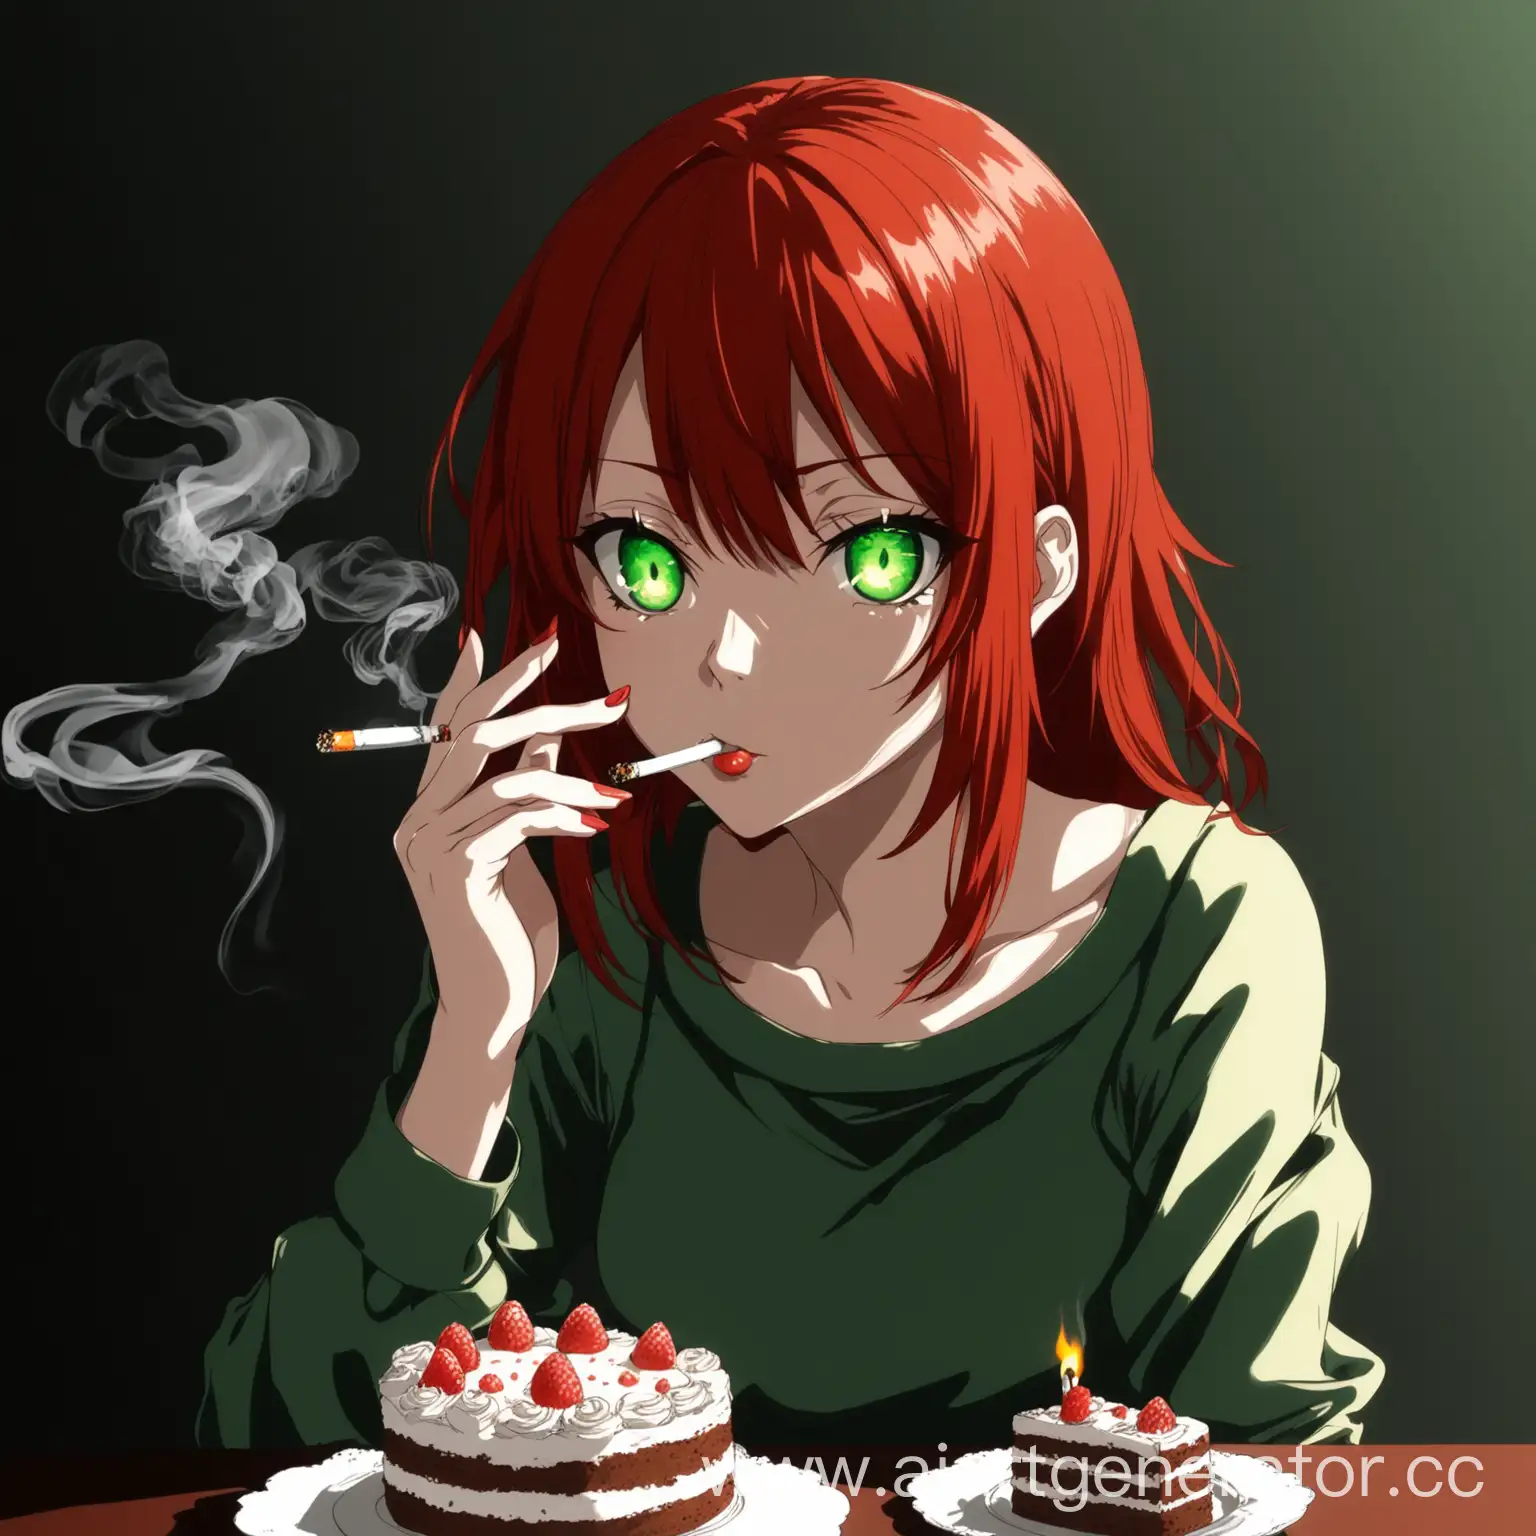 Аниме Девочка девочка с тортиком и сигаретой во рту с рыжими волосами и зелеными глазами